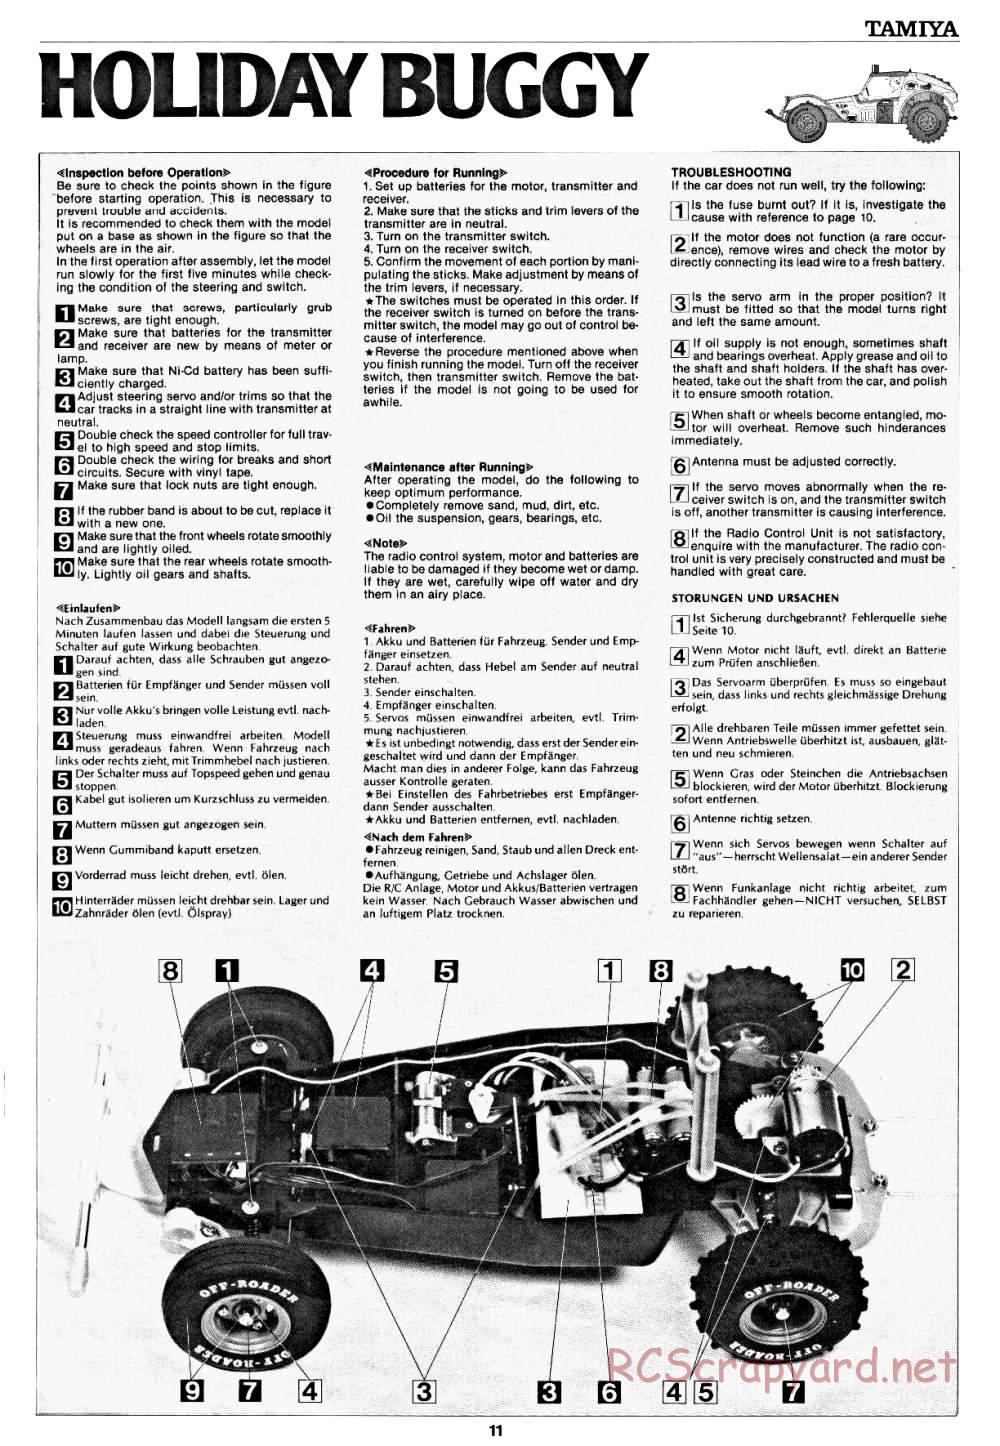 Tamiya - Holiday Buggy - 58023 - Manual - Page 11